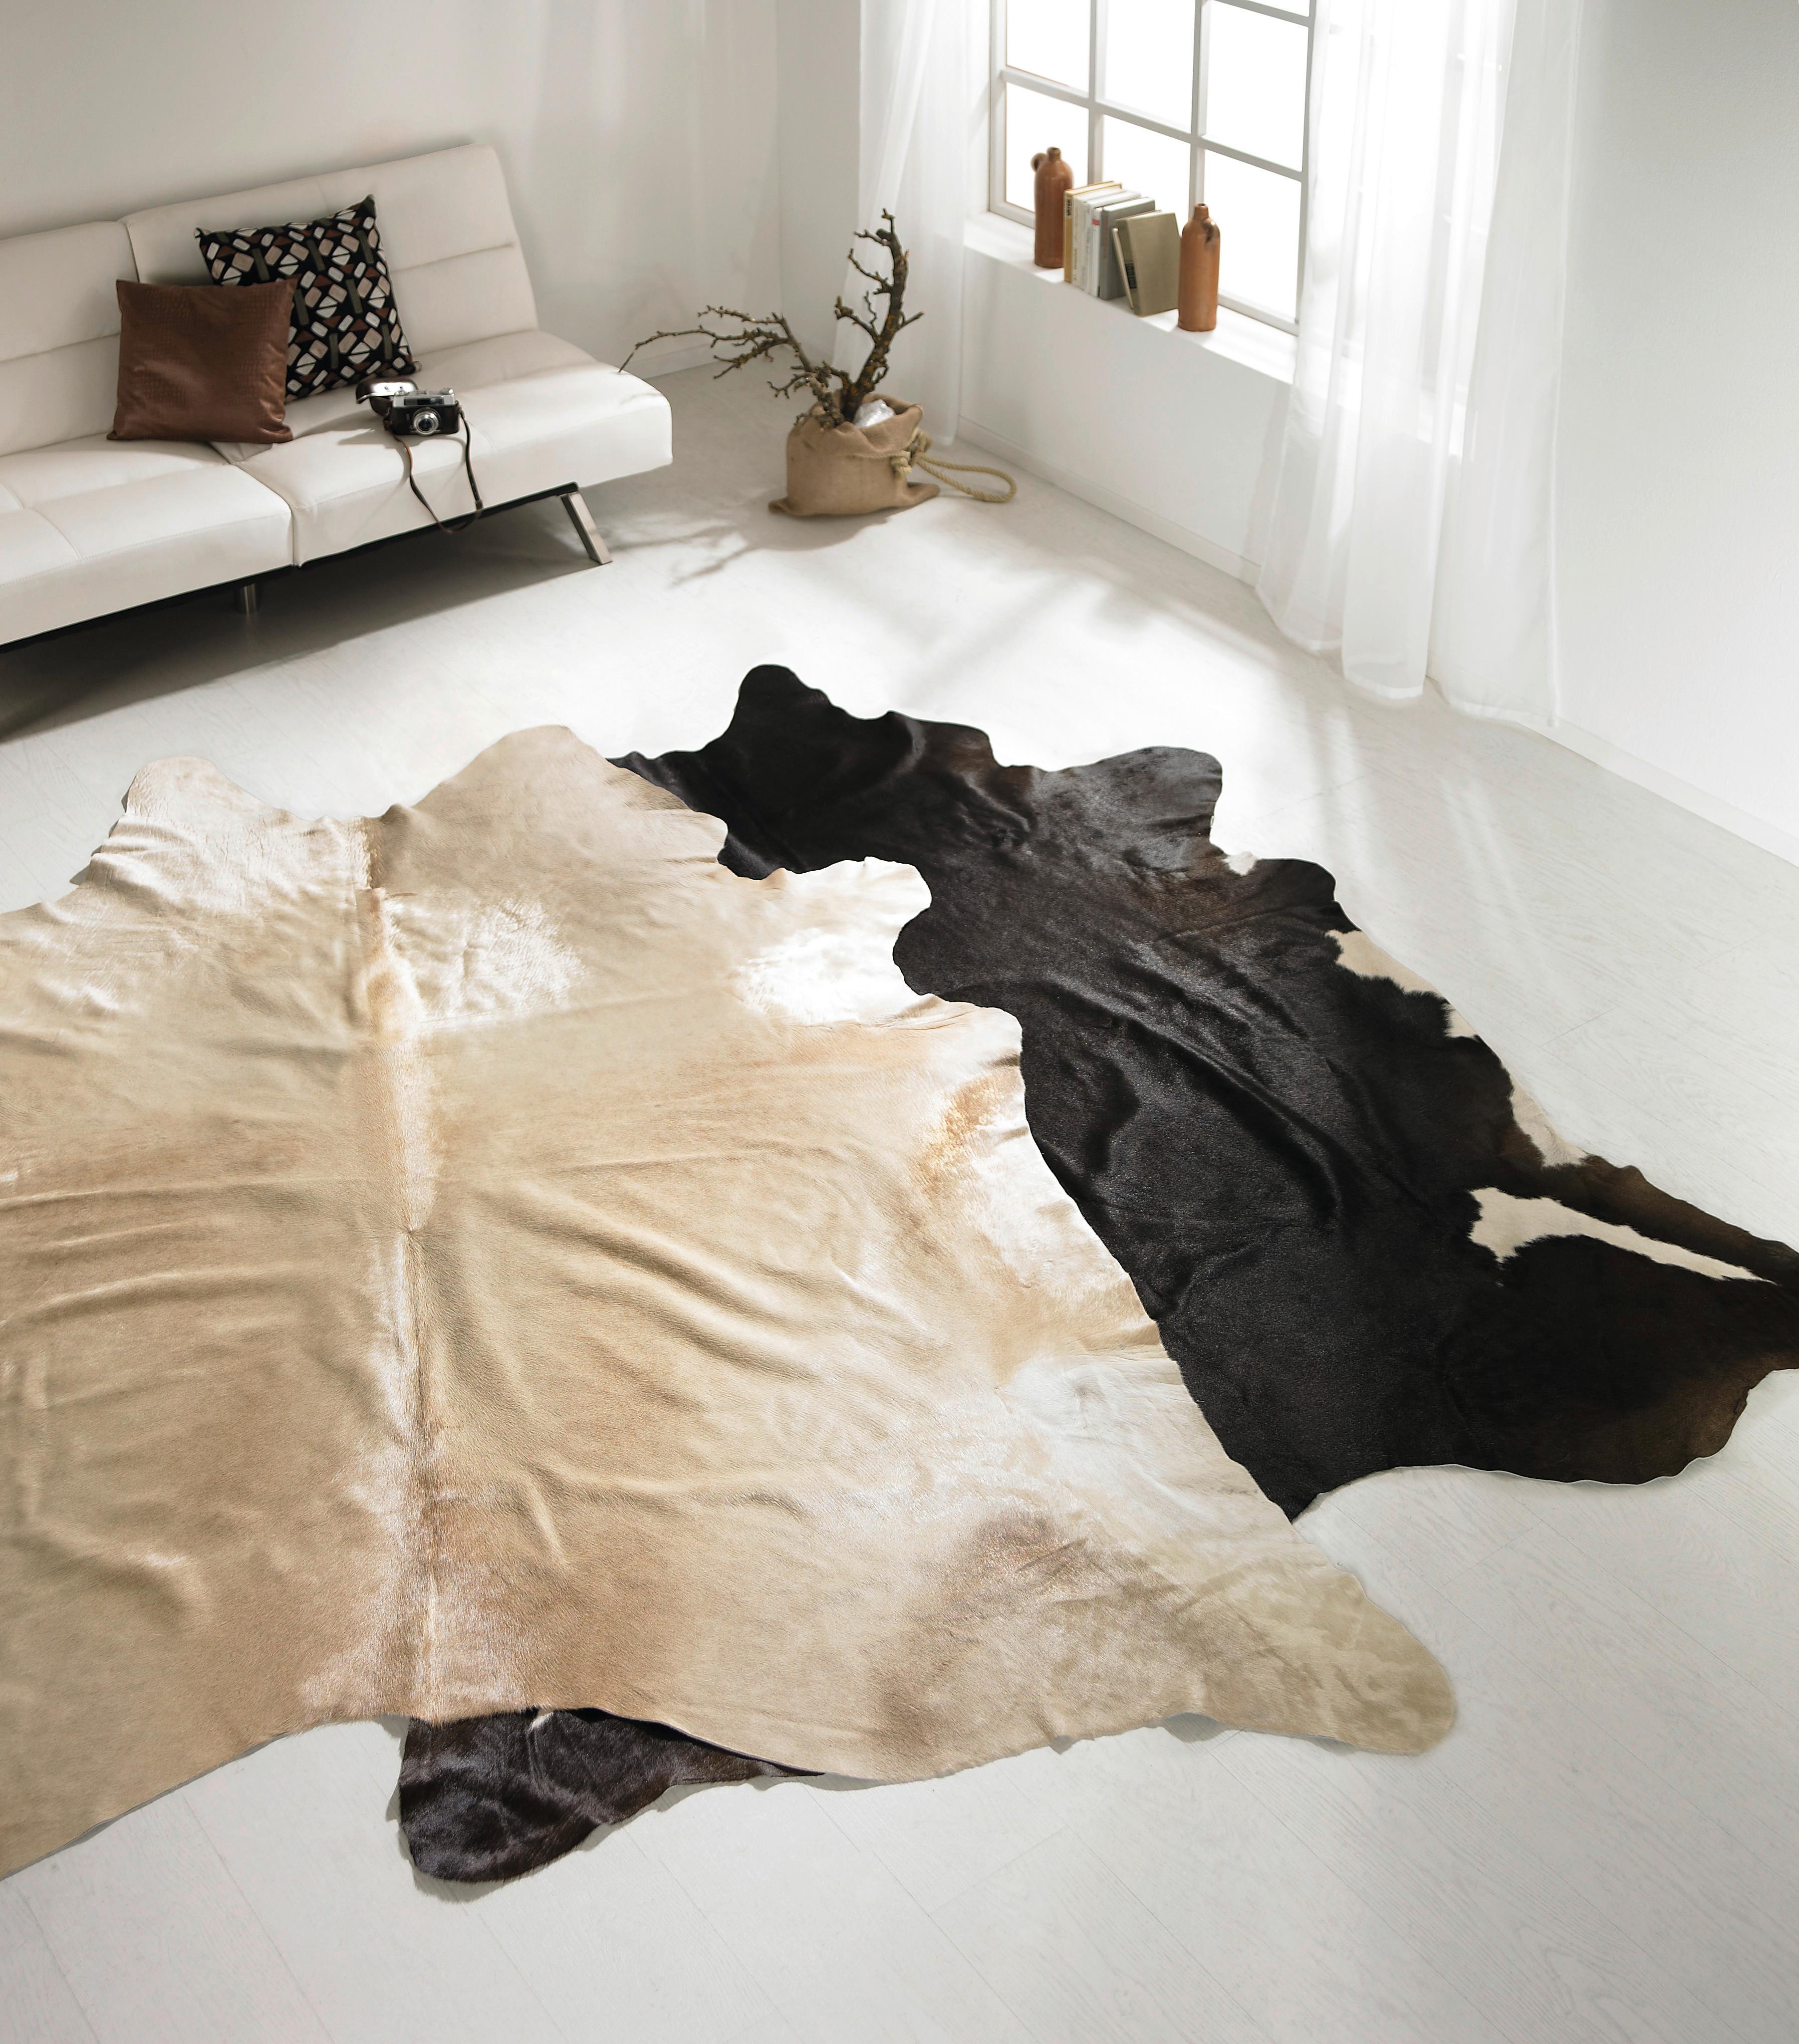 Hovězí Kůže Heino, 200/300cm - černá/hnědá, kožešina (200/300cm) - Modern Living